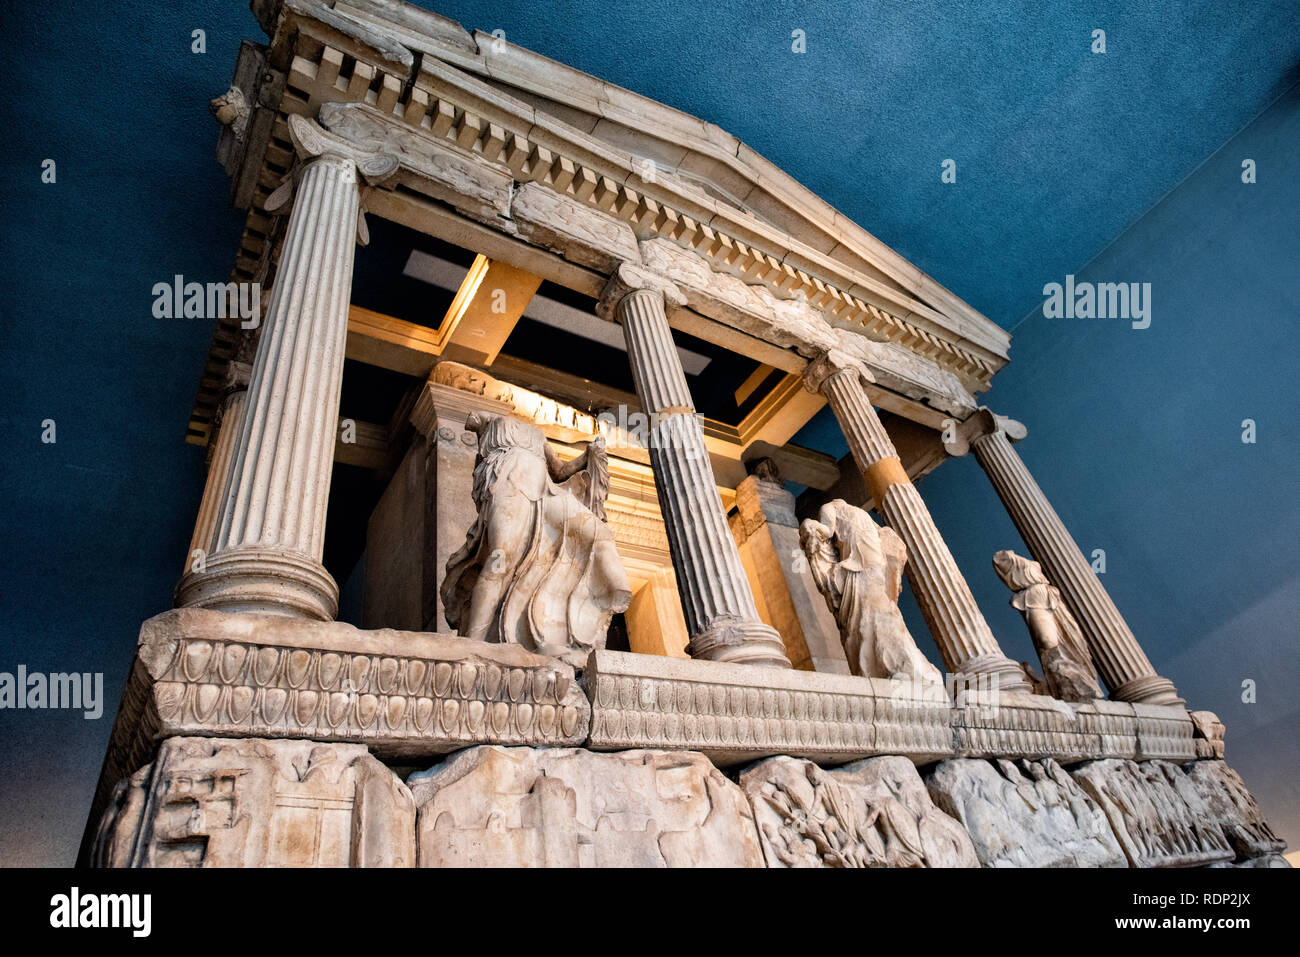 LONDRES, Royaume-Uni - le monument Nereid, le plus grand et le plus fin des tombes lykiennes de thé trouvé près de Xanthos dans le sud-ouest de la Turquie. Il est nommé d'après les figures de Nereids, les filles du dieu marin Nereus, qui sont placées entre les colonnes. Il a été construit autour de 390-380 BC. Le British Museum, à Londres, est l'un des plus grands et des plus complets musées du monde. Elle est dédiée à l'histoire, à l'art et à la culture humaines et a été créée en 1753. Le British Museum de Londres abrite une vaste collection d'objets d'art et d'objets du monde, reflétant l'histoire humaine, la culture et les civilisations du monde entier Banque D'Images